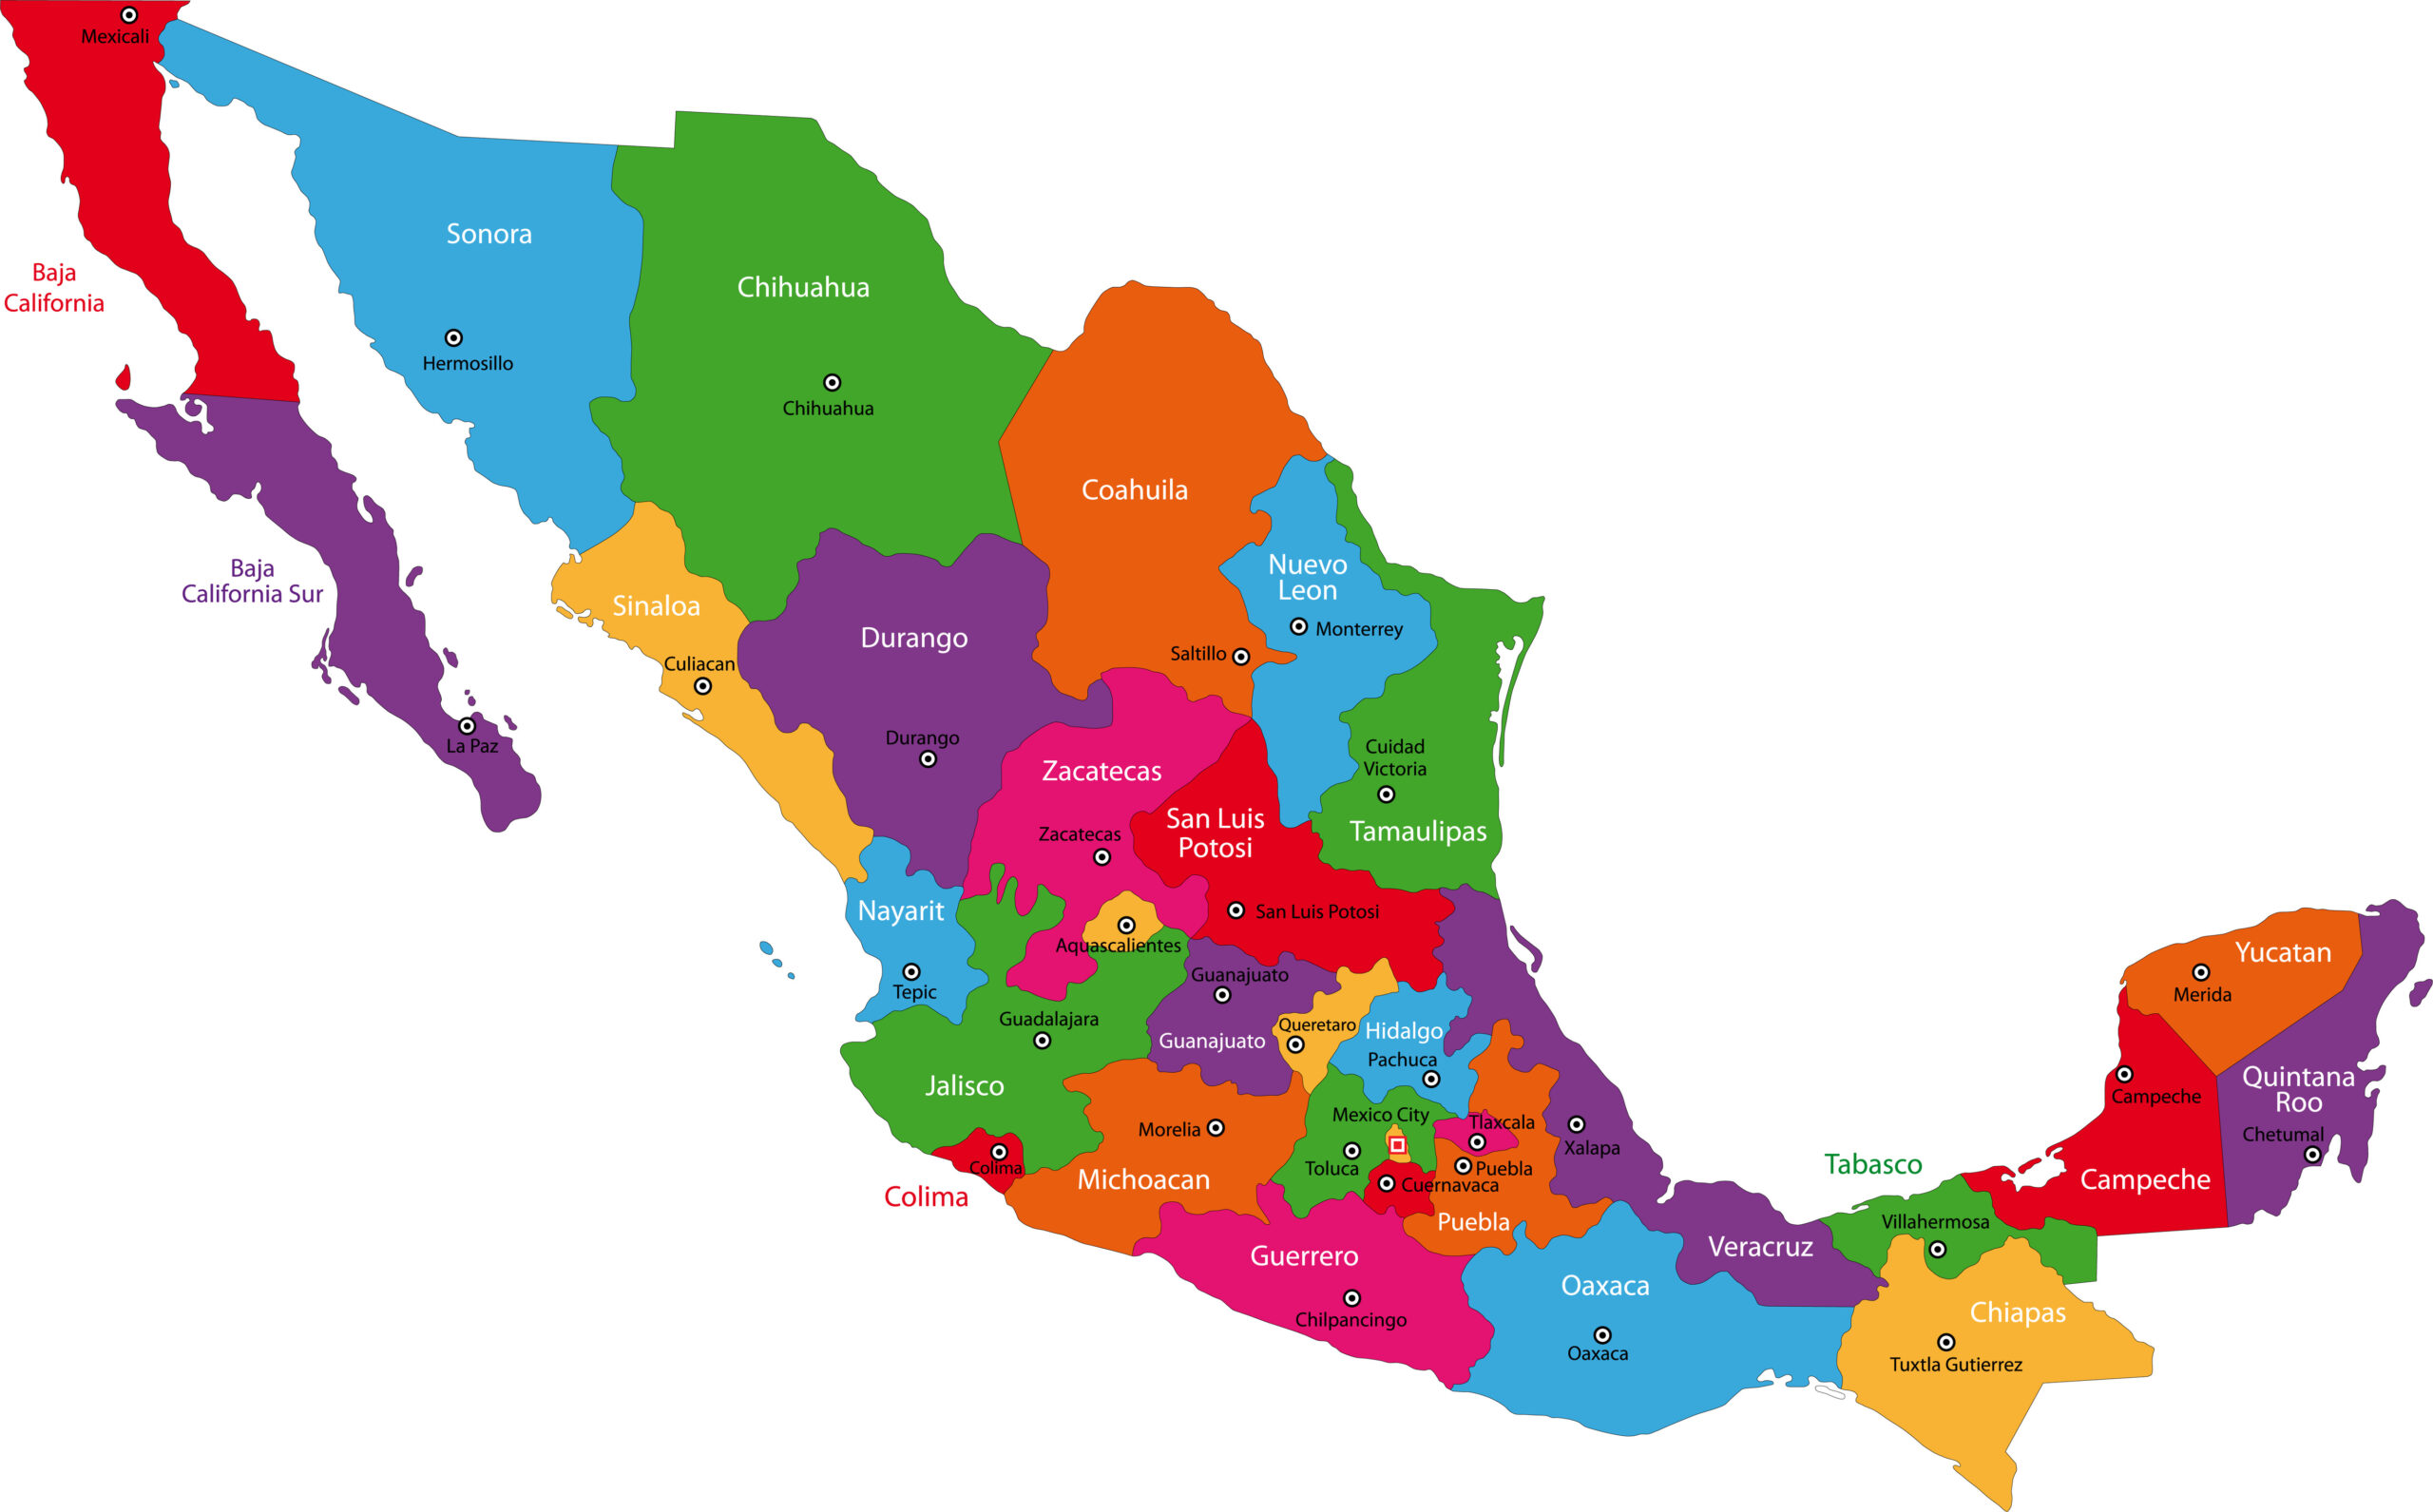 Colorido mapa político de México que muestra los estados y las principales ciudades.